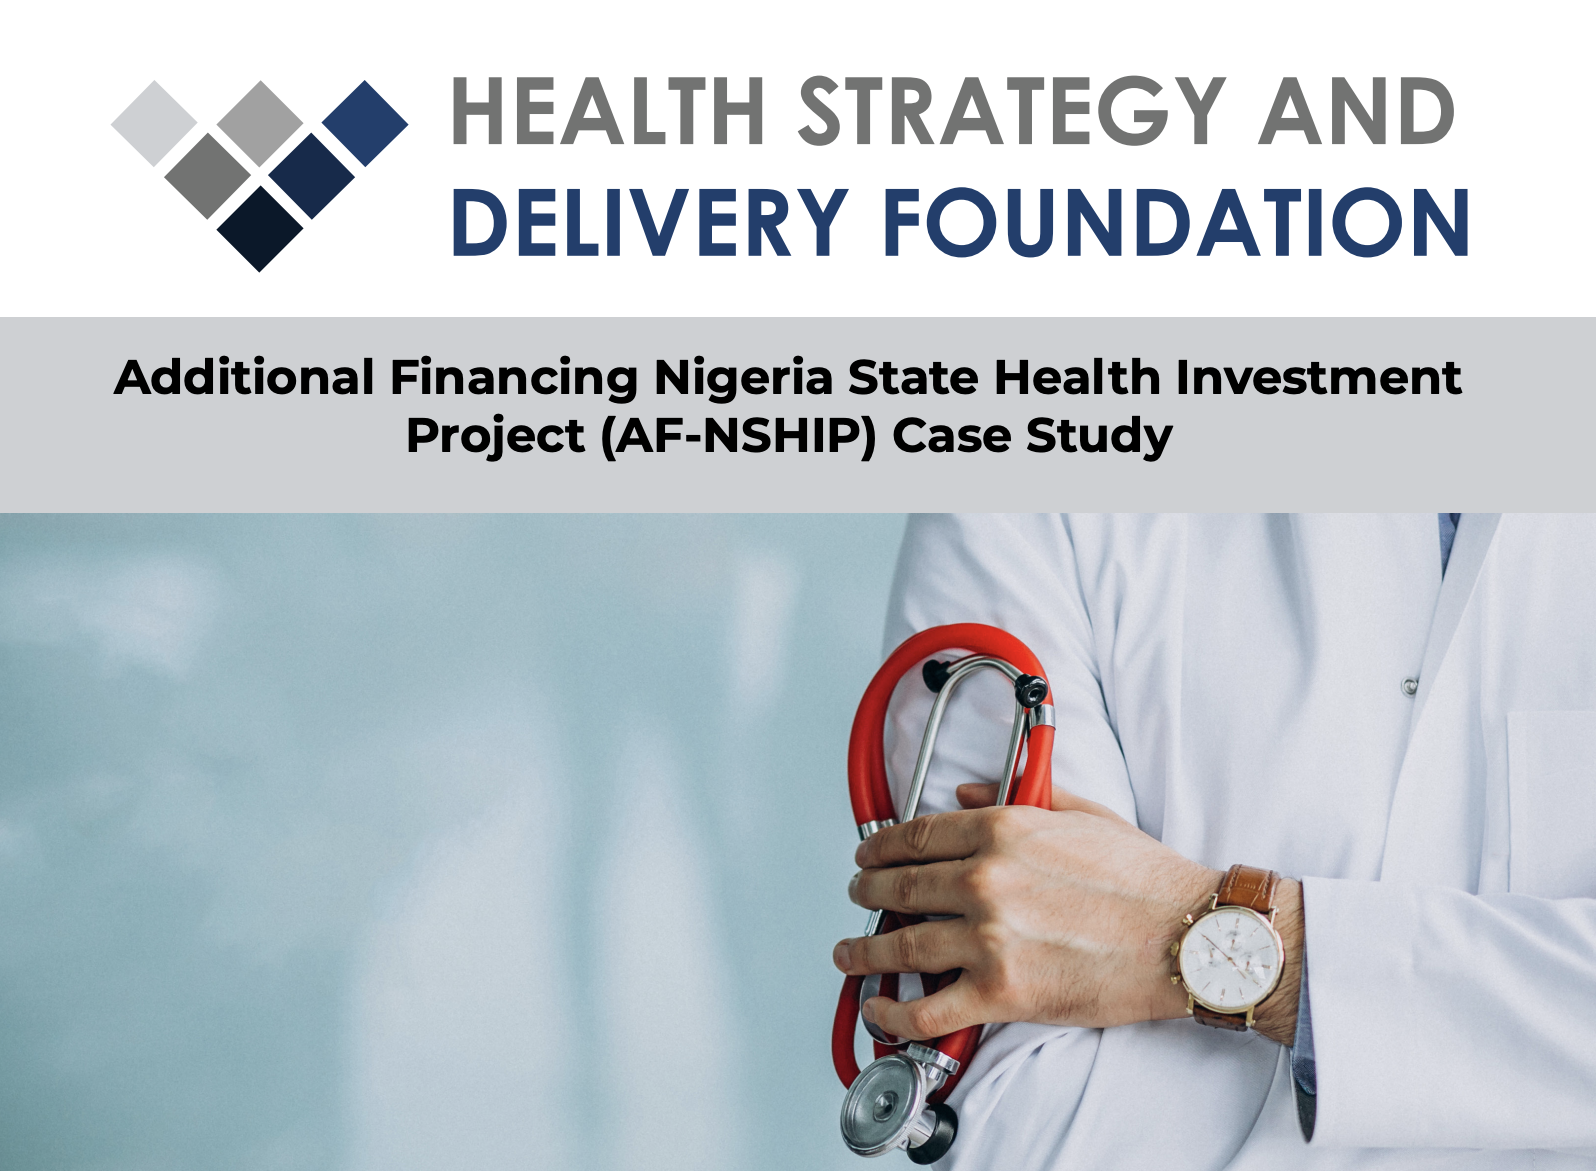 Financement additionnel du projet d'investissement dans la santé de l'Etat du Nigeria (AF-NSHIP) Etude de cas